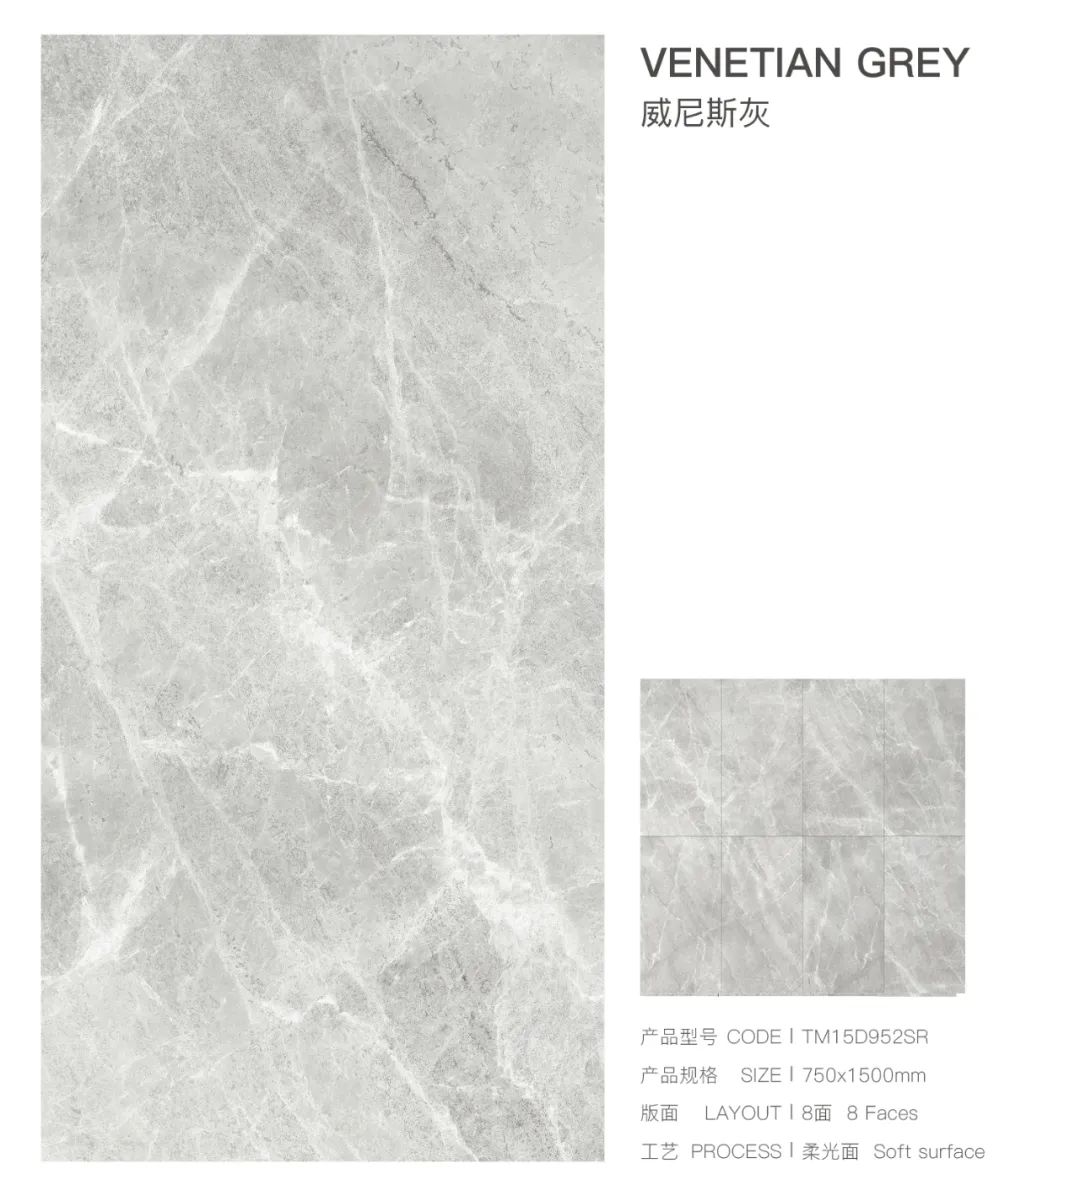 新品上市丨通利大理石瓷砖750x1500新品魅力呈现(上)(图15)